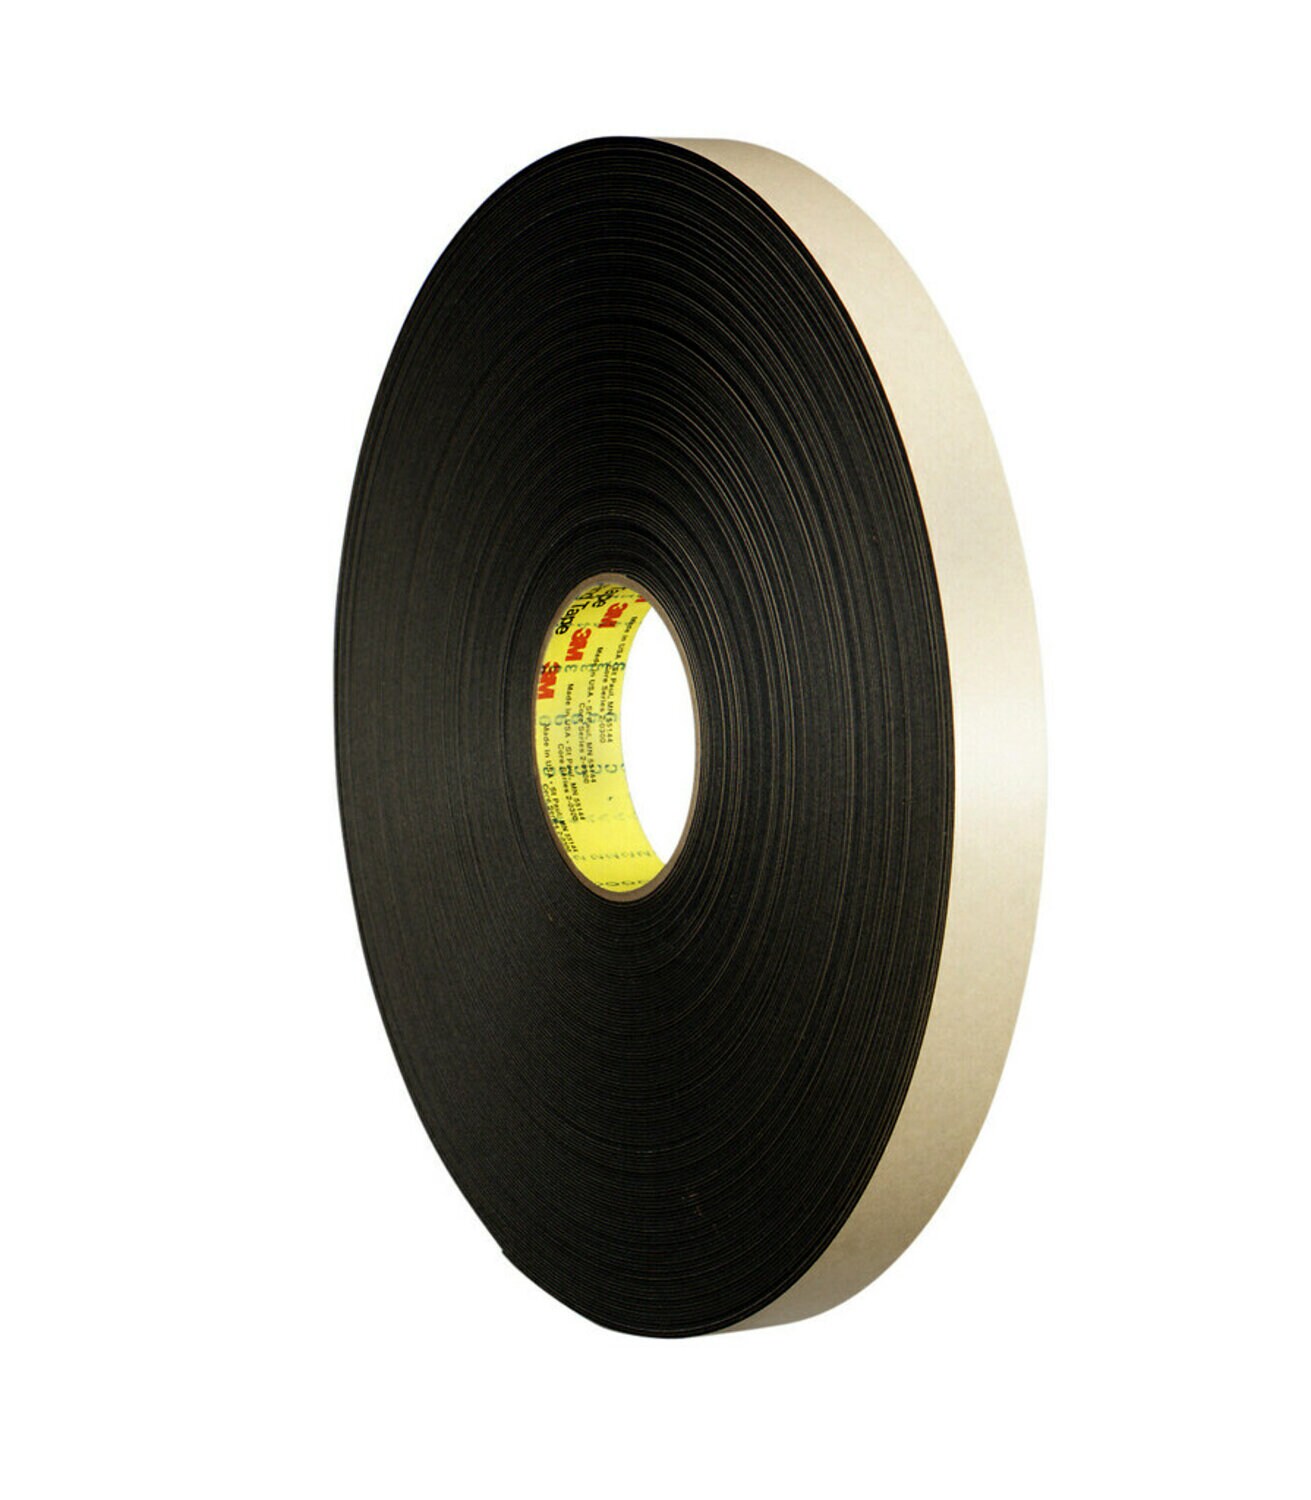 7000123709 - 3M Double Coated Polyethylene Foam Tape 4492B, Black, 3/4 in x 72 yd,
31 mil, 12 rolls per case